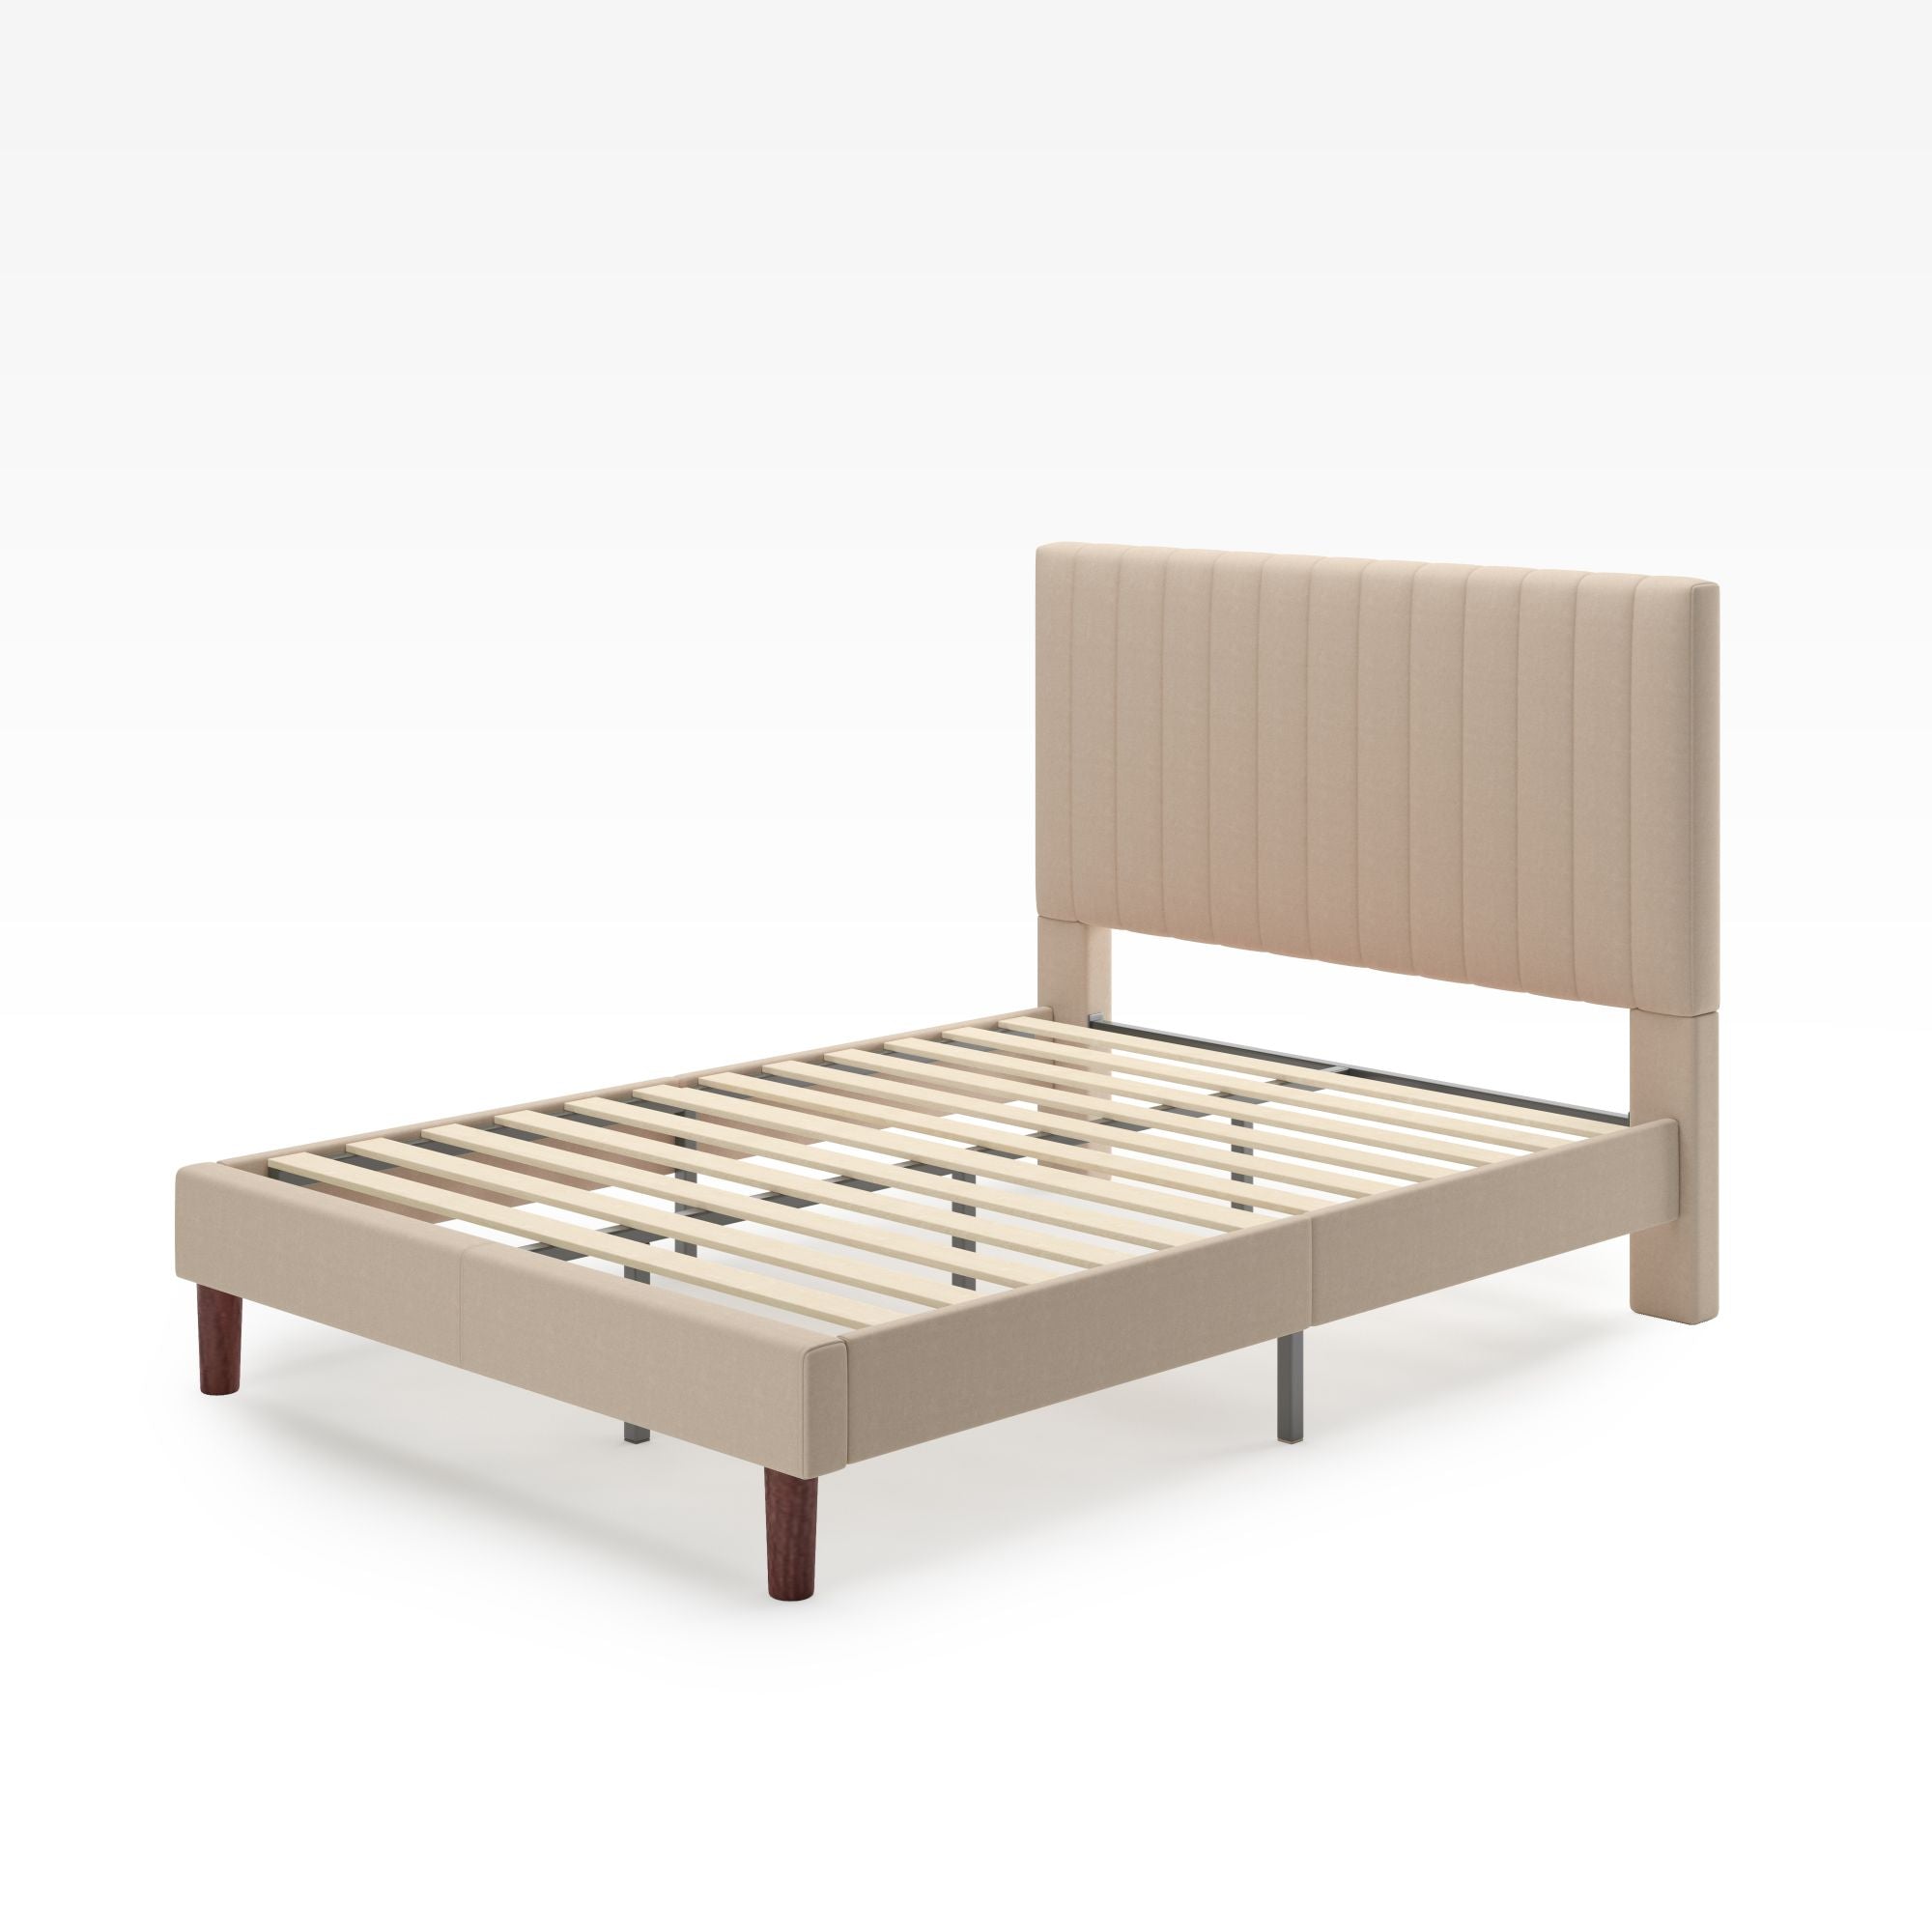 Debi Upholstered Platform Bed frame Quarter